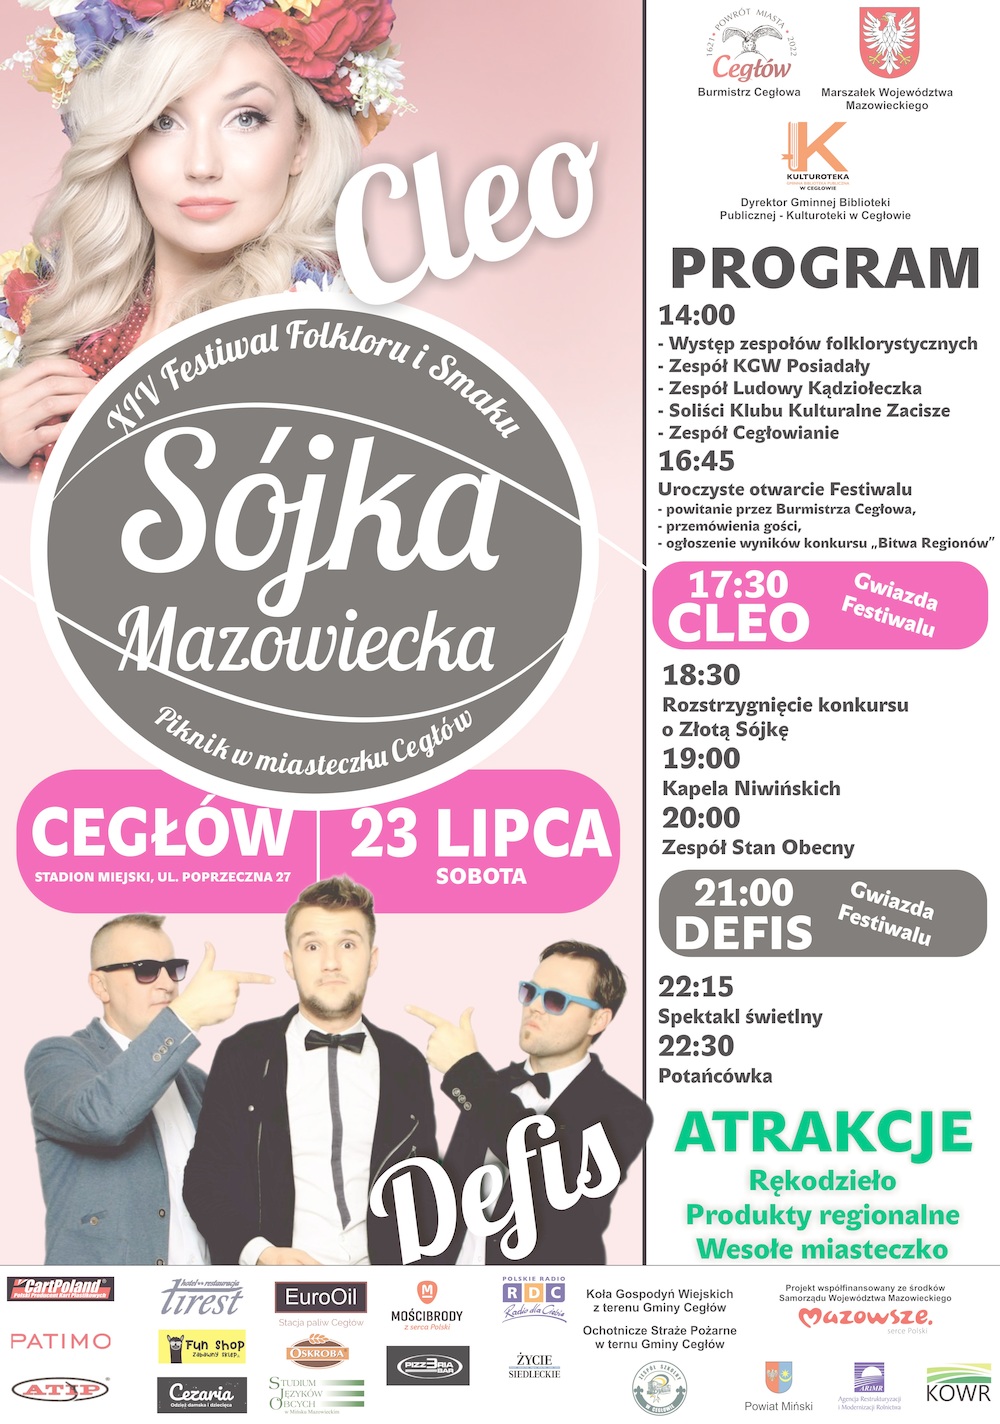 XIV Festiwal Folkloru i Smaku "Sójka Mazowiecka" - Piknik w miasteczku Cegłów